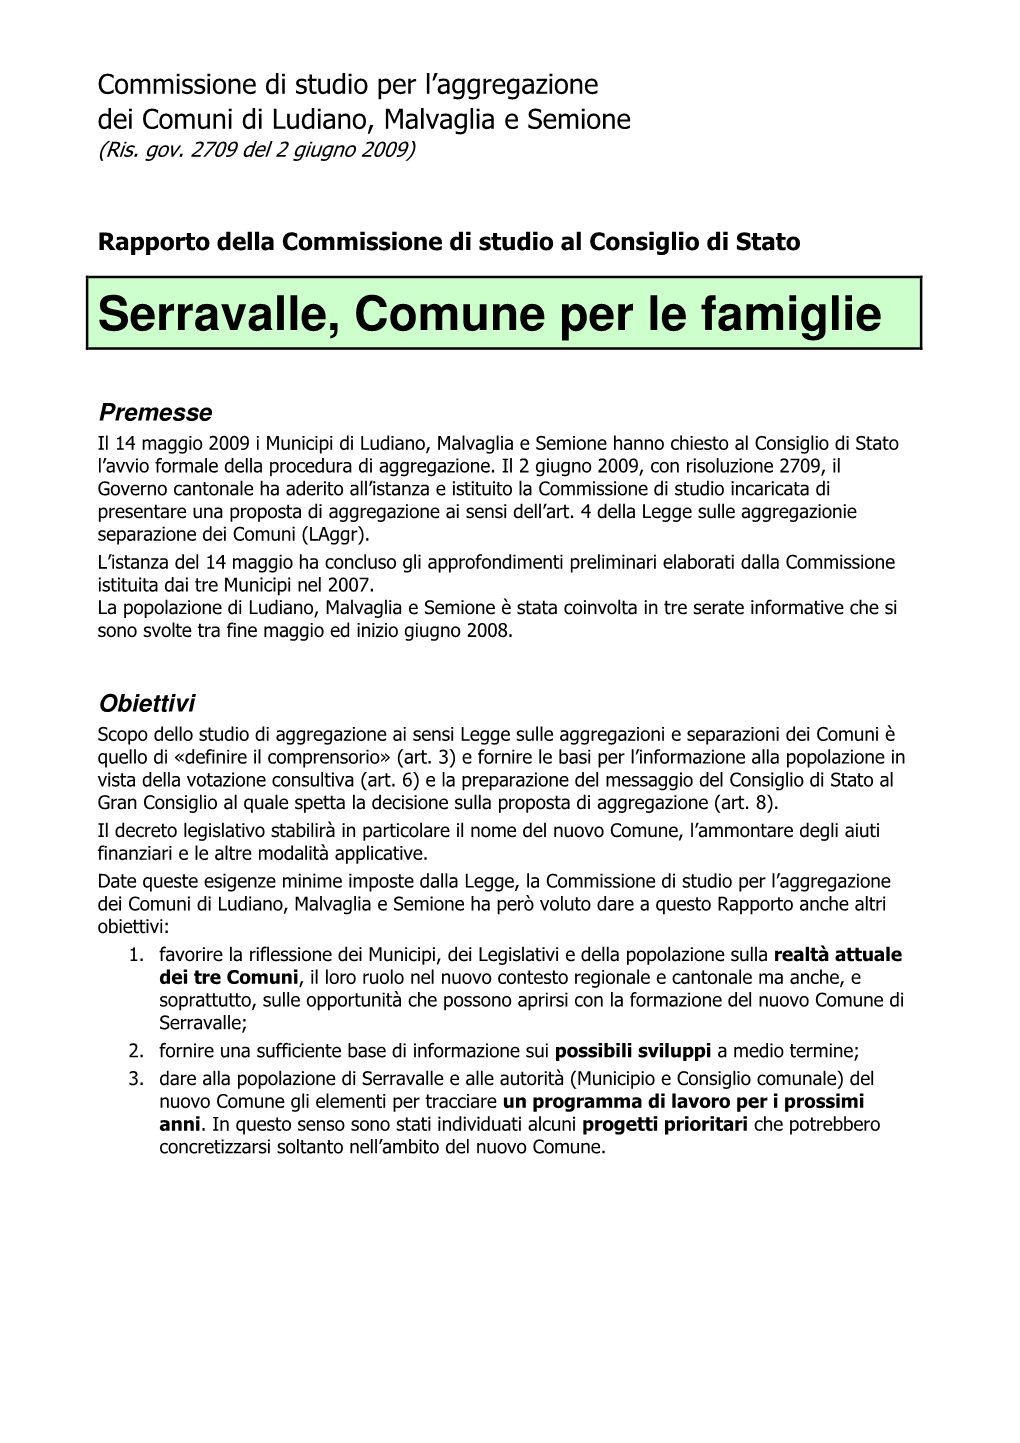 Serravalle, Comune Per Le Famiglie